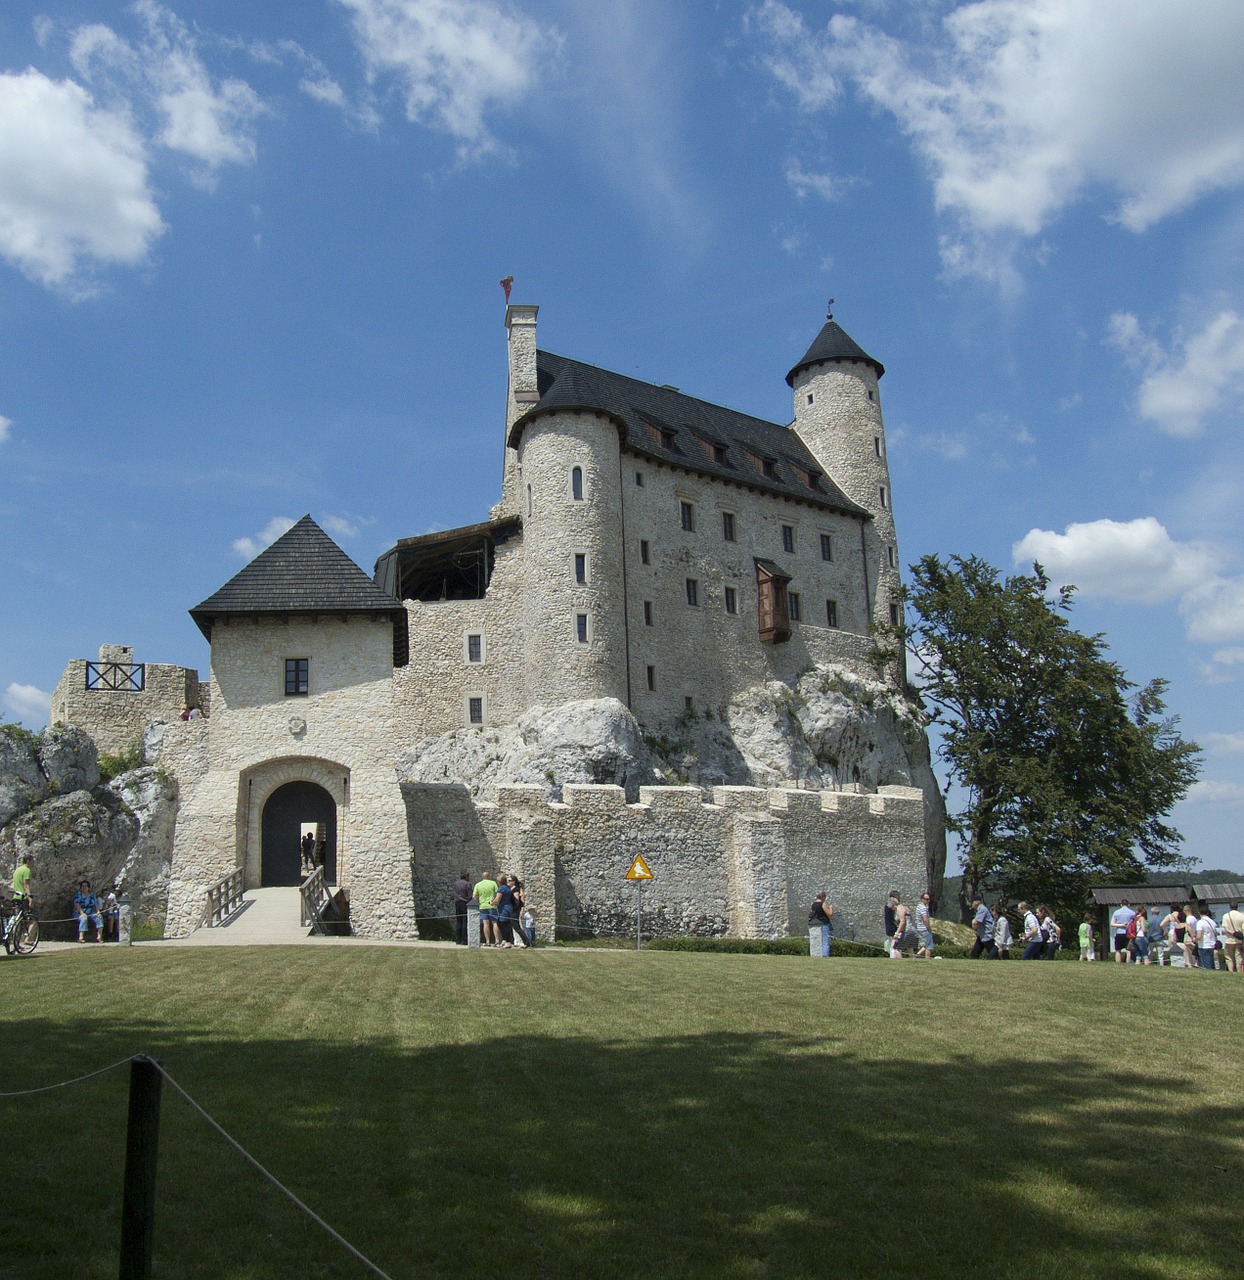 Zamek w Bobolicach jako solidna silnie historycznie wizytówka Polski